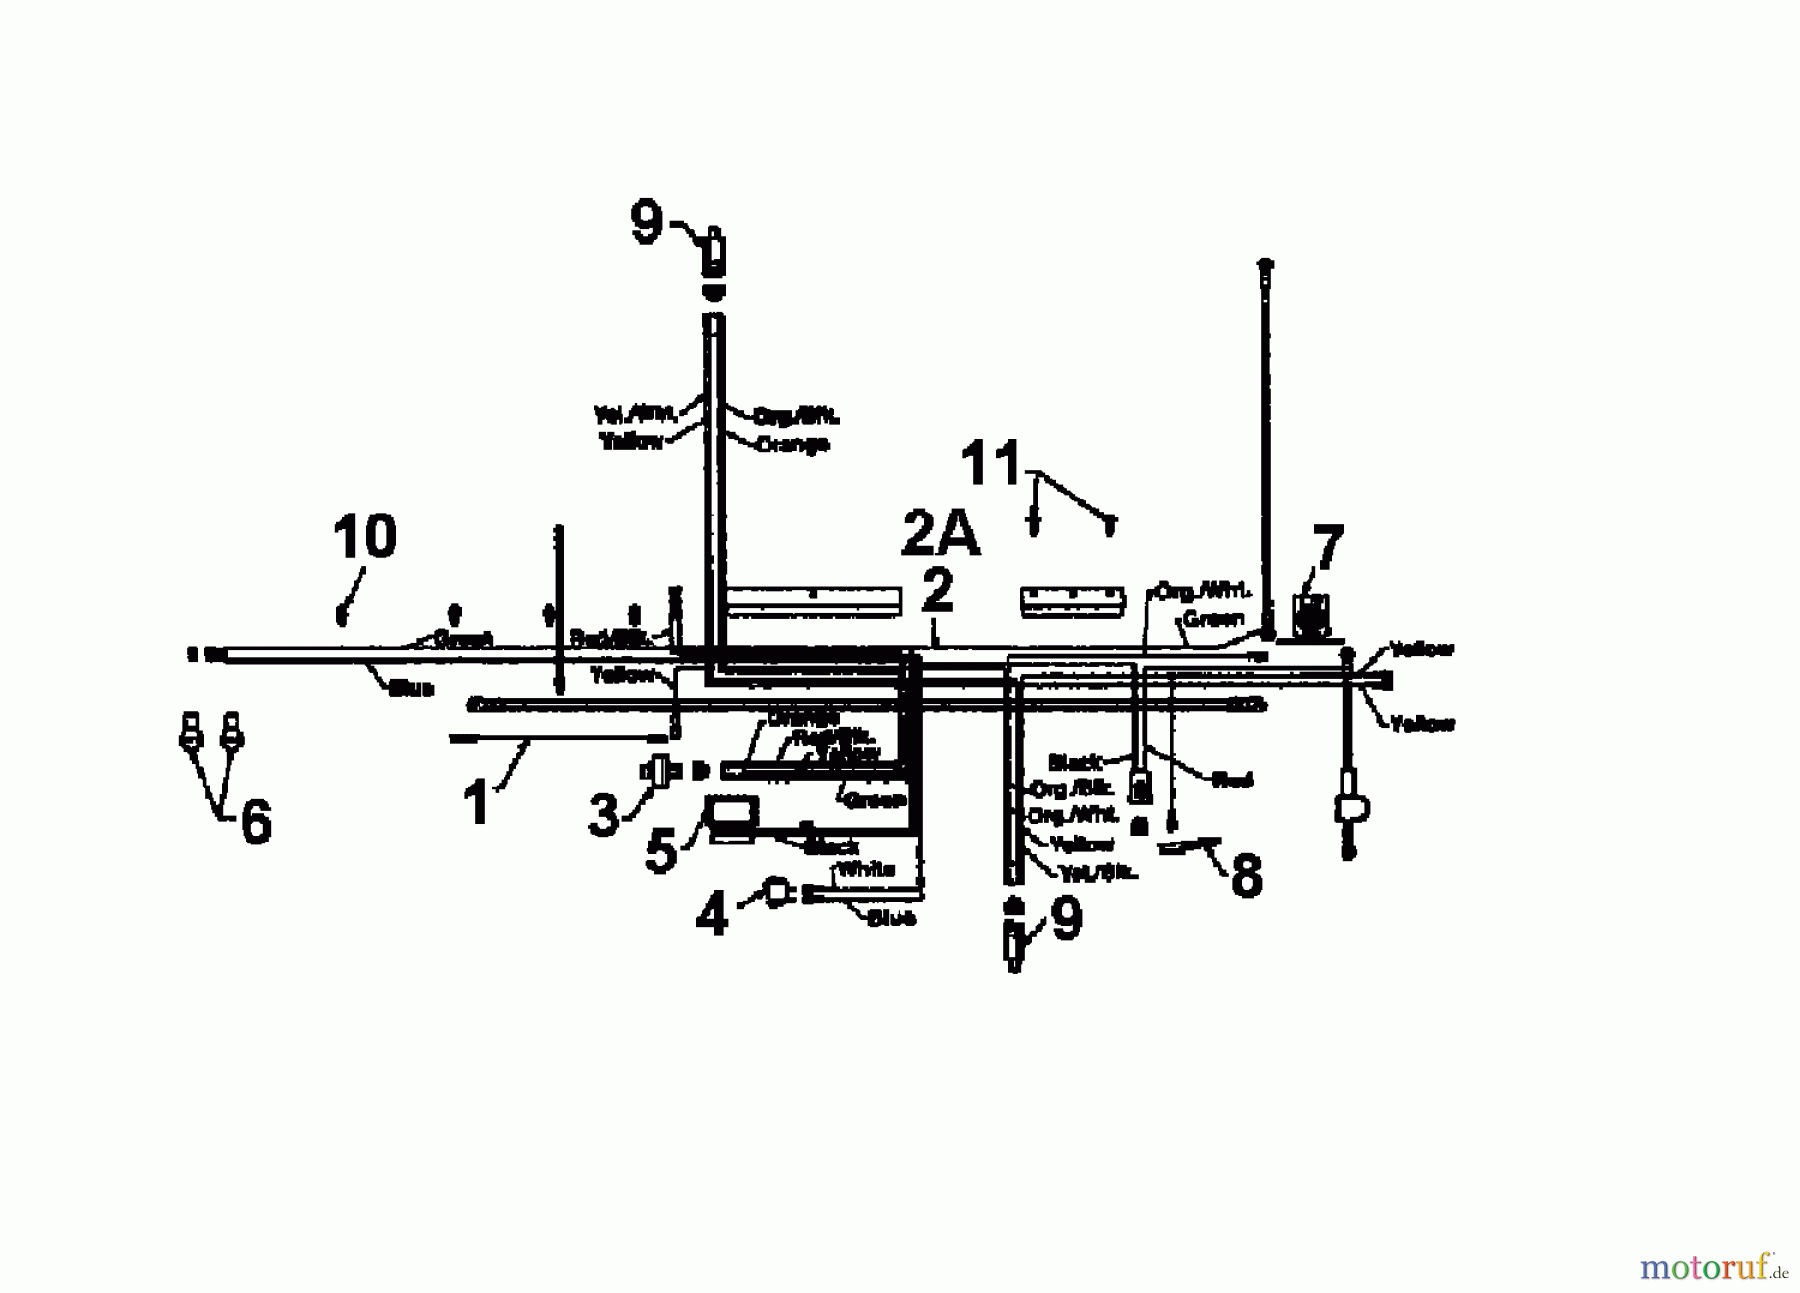  White Tracteurs de pelouse LT 160 136T676G679  (1996) Plan électrique cylindre simple